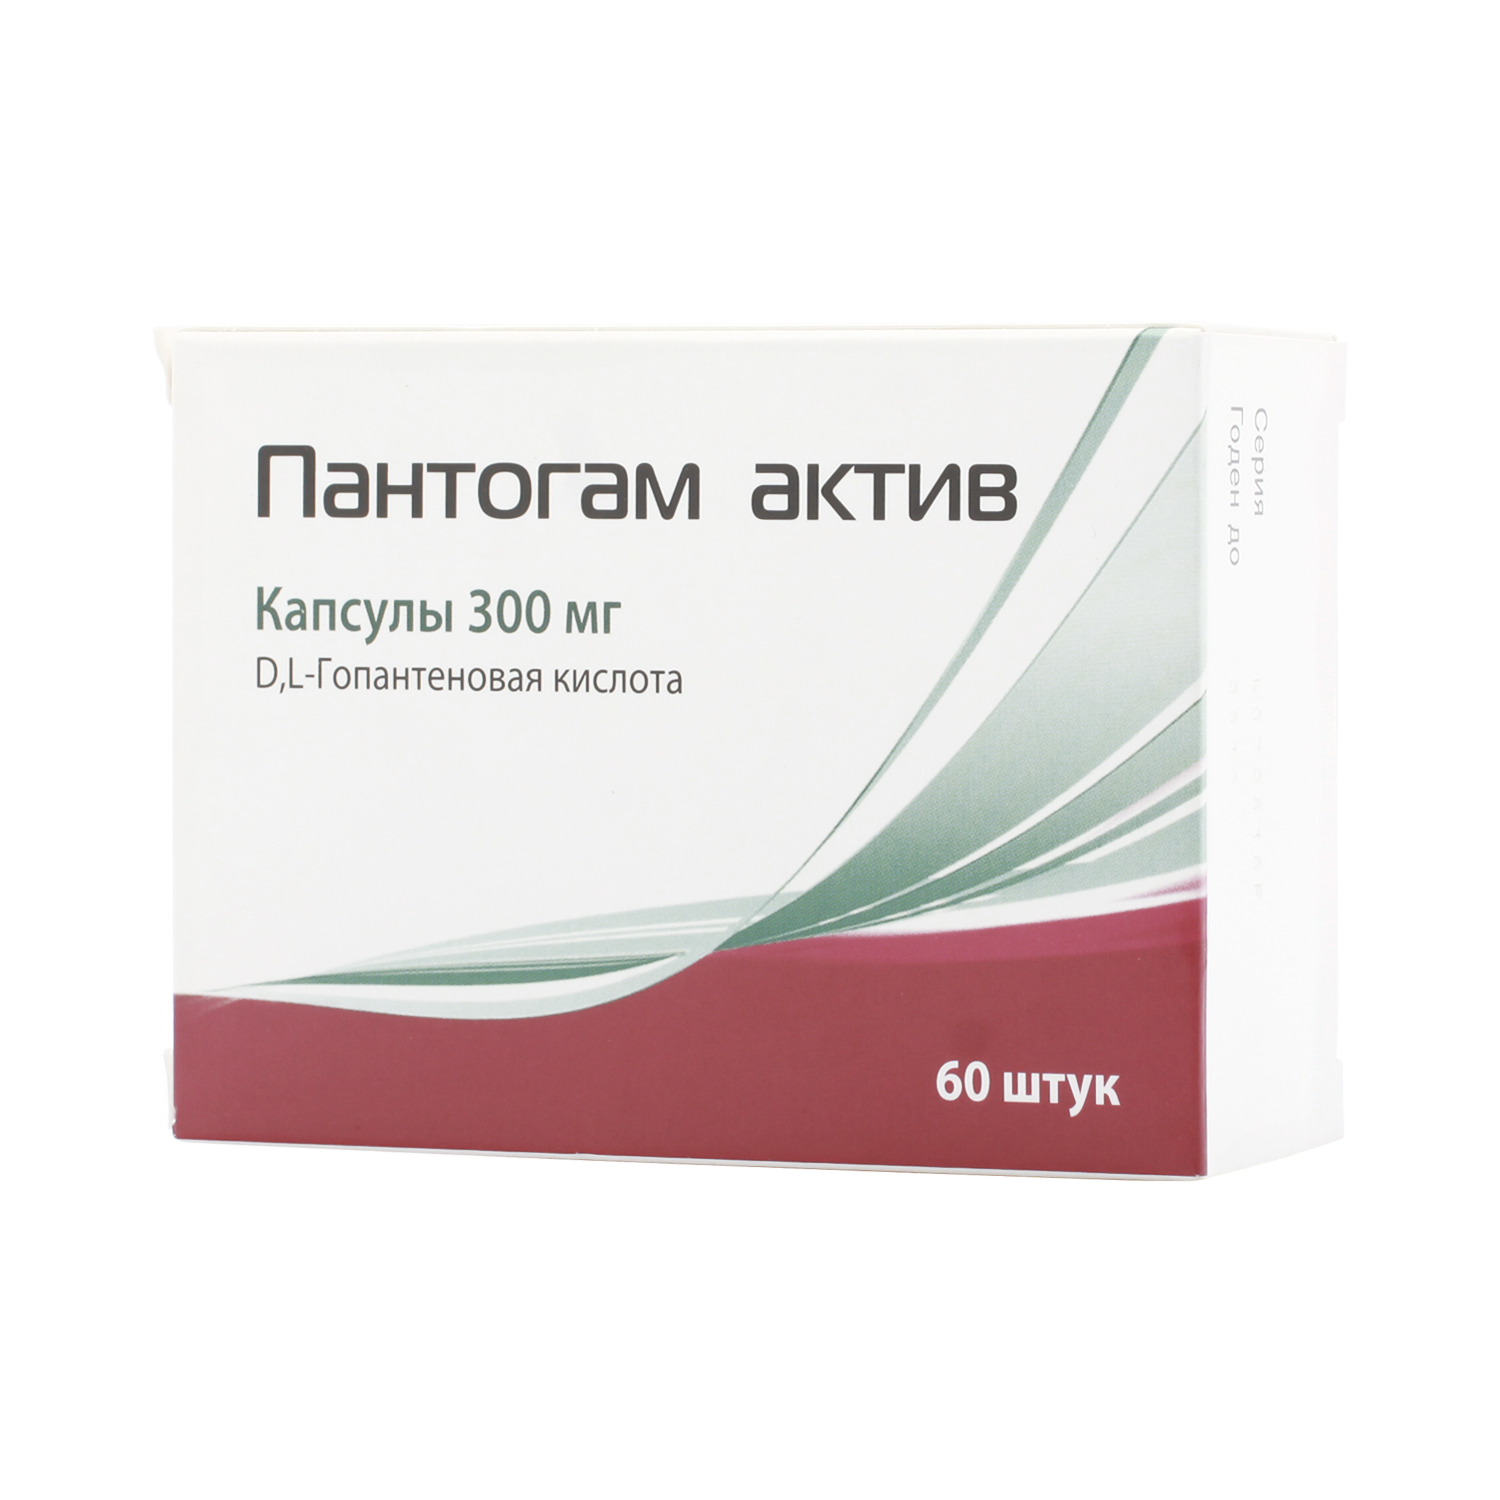 Пантогам актив Капсулы 300 мг 60 шт  в Домодедово, цена 782,0 руб .